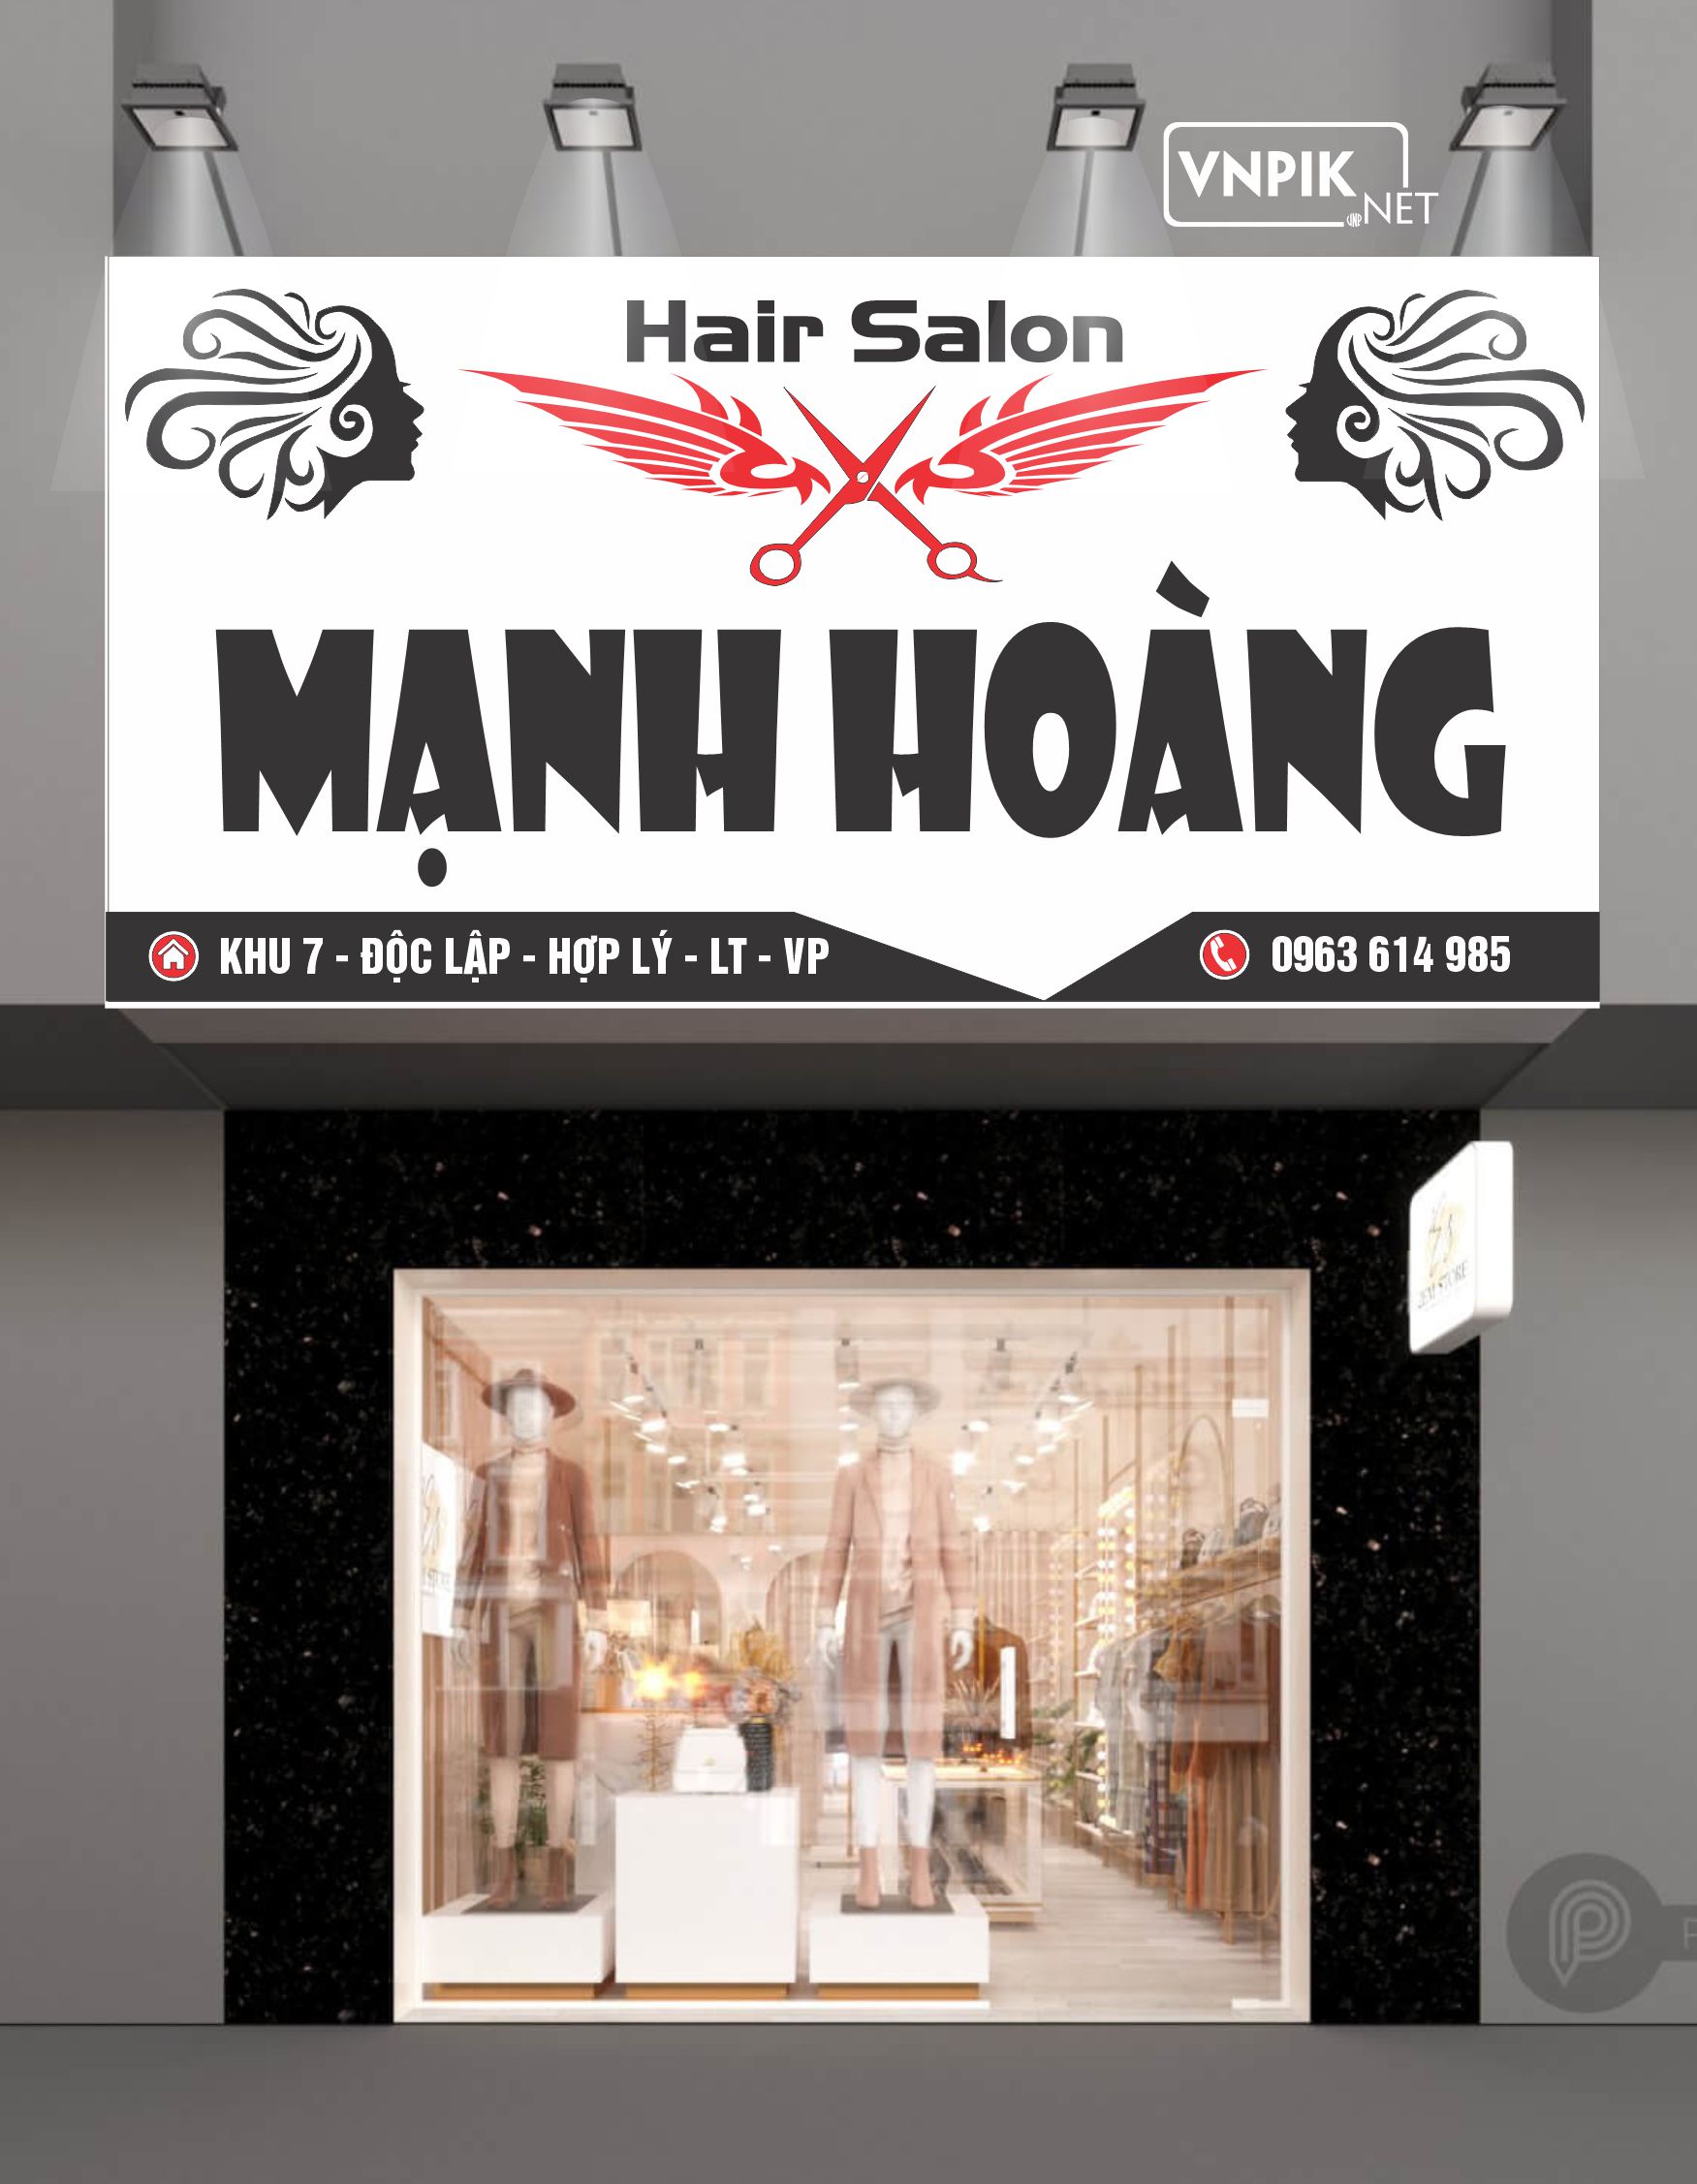 Mẫu bảng biển quảng cáo mạnh hoàng Hair Salon